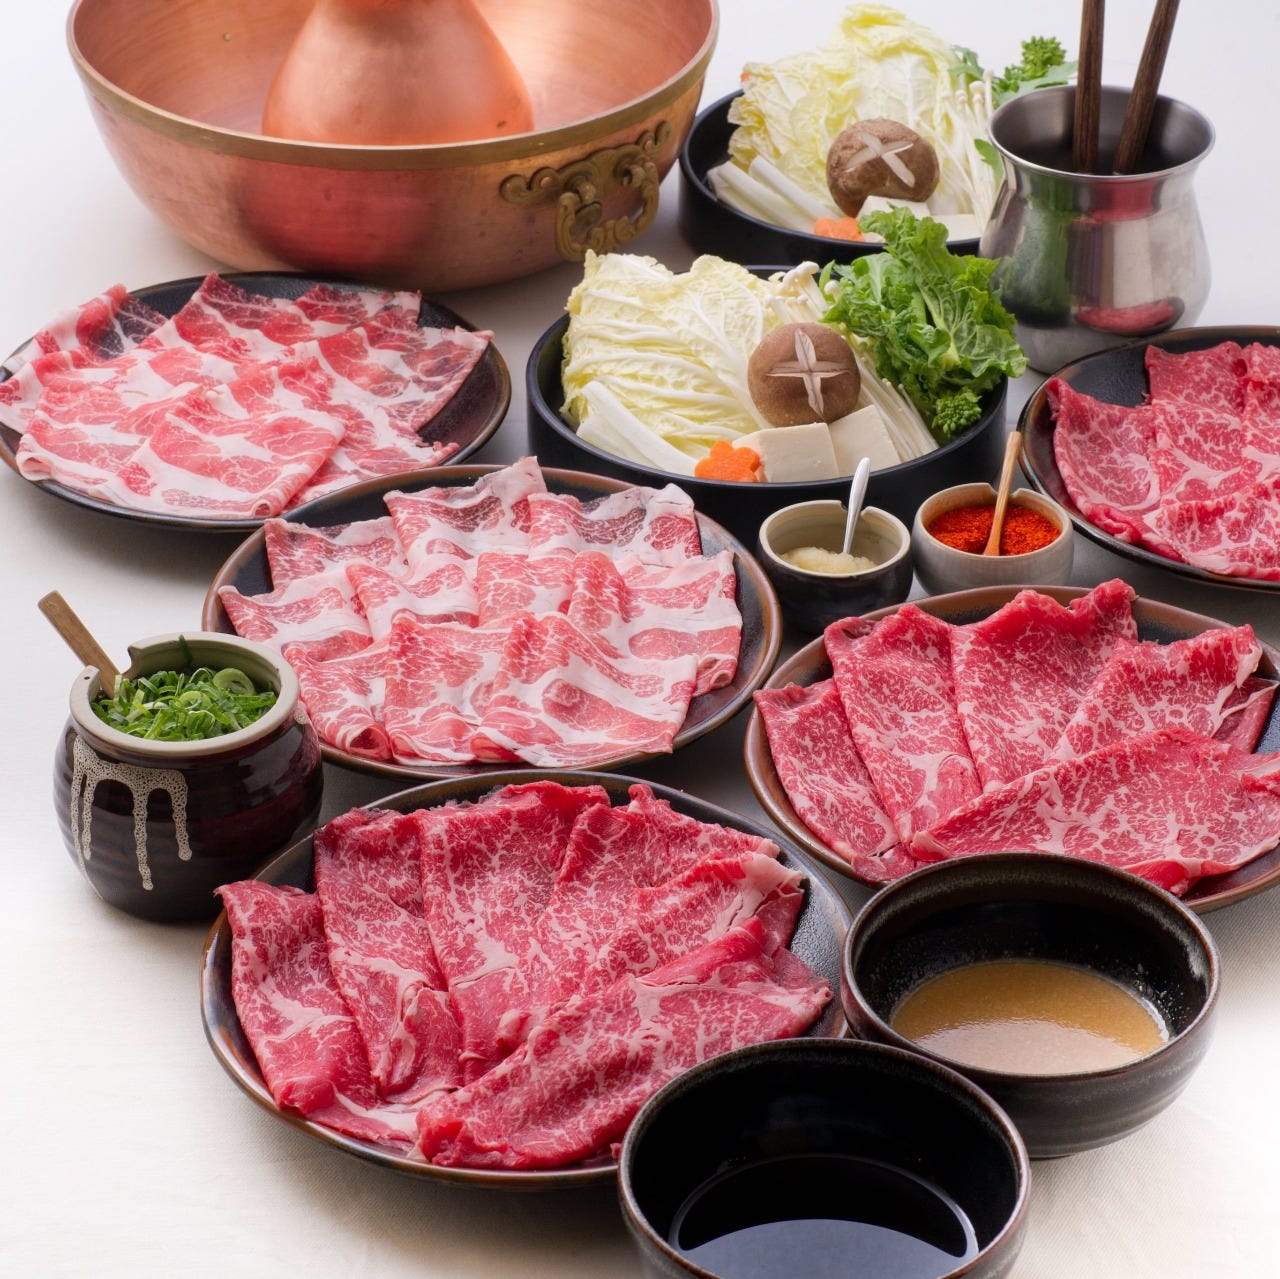 【食べ放題】
牛肉、豚肉、野菜それぞれ1皿から追加できます。